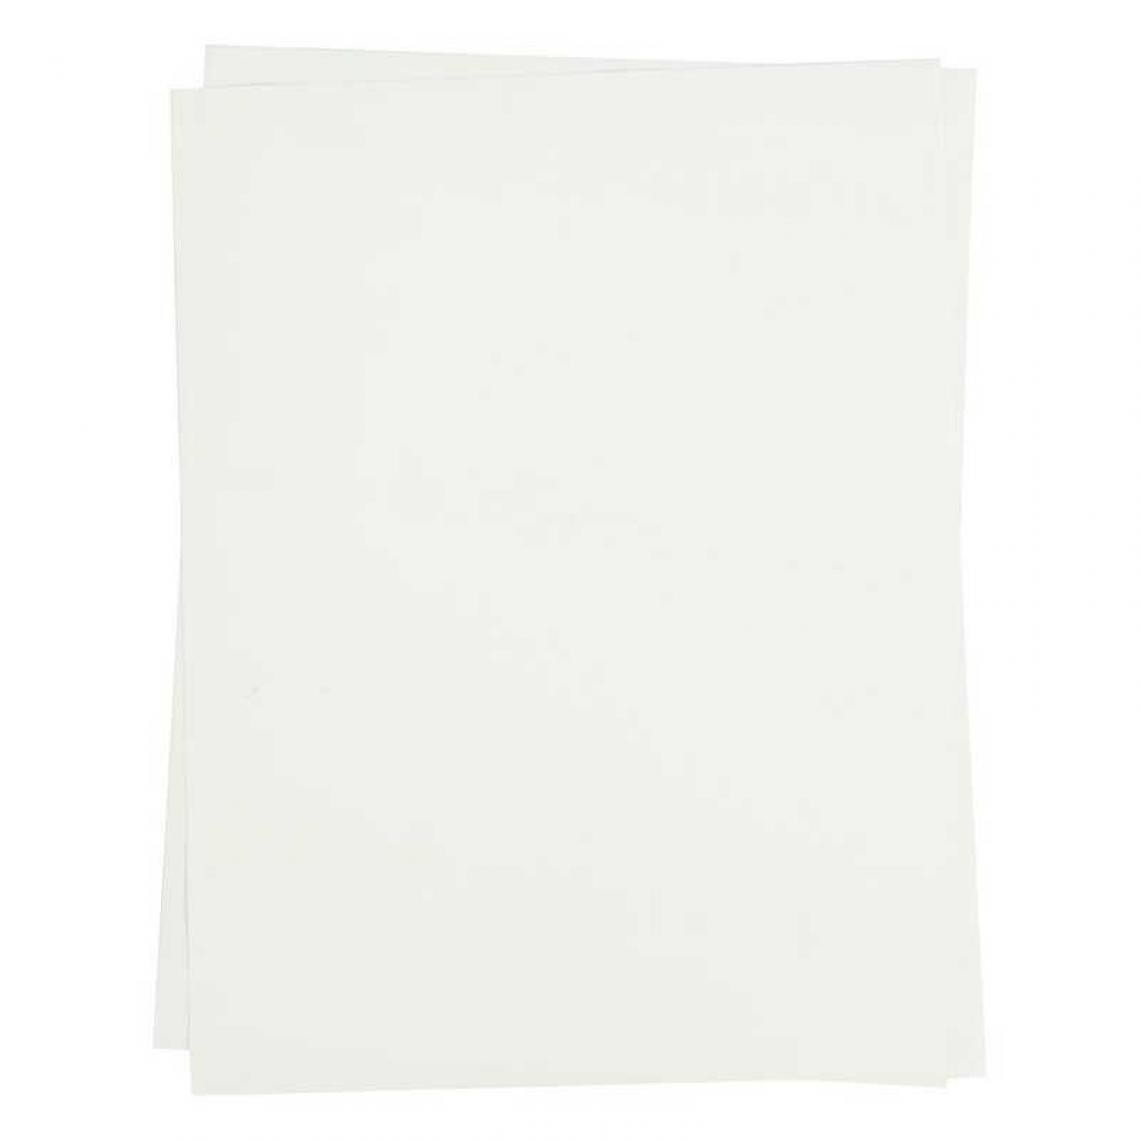 Creotime - 5 feuilles de papier transfert pour textiles clairs A4 - Dessin et peinture